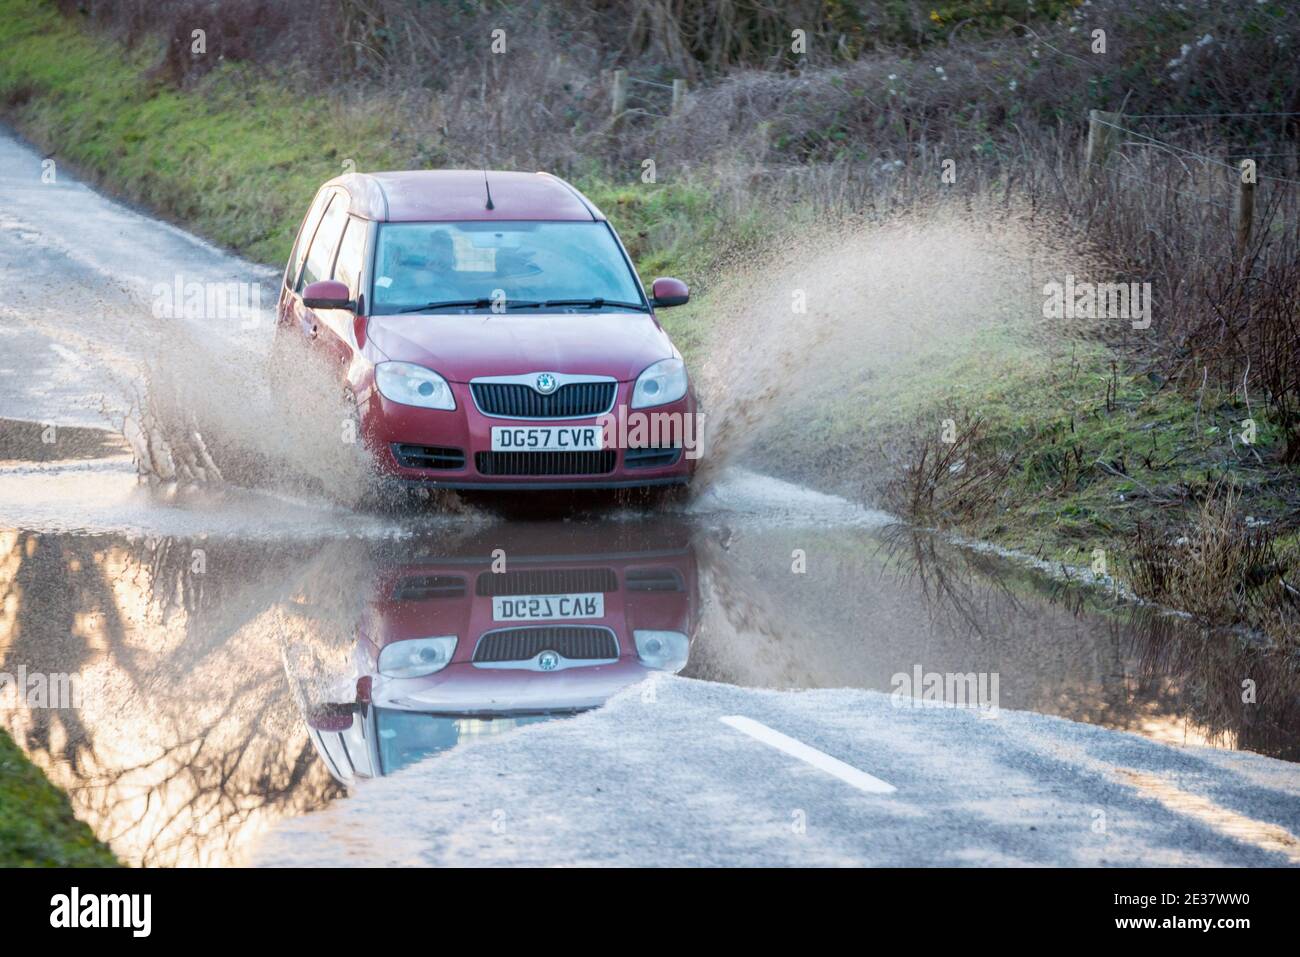 Brighton, 15 janvier 2021 : une voiture traversant une route inondée dans la campagne du Sussex à Saddlescombe, près de Brighton Banque D'Images